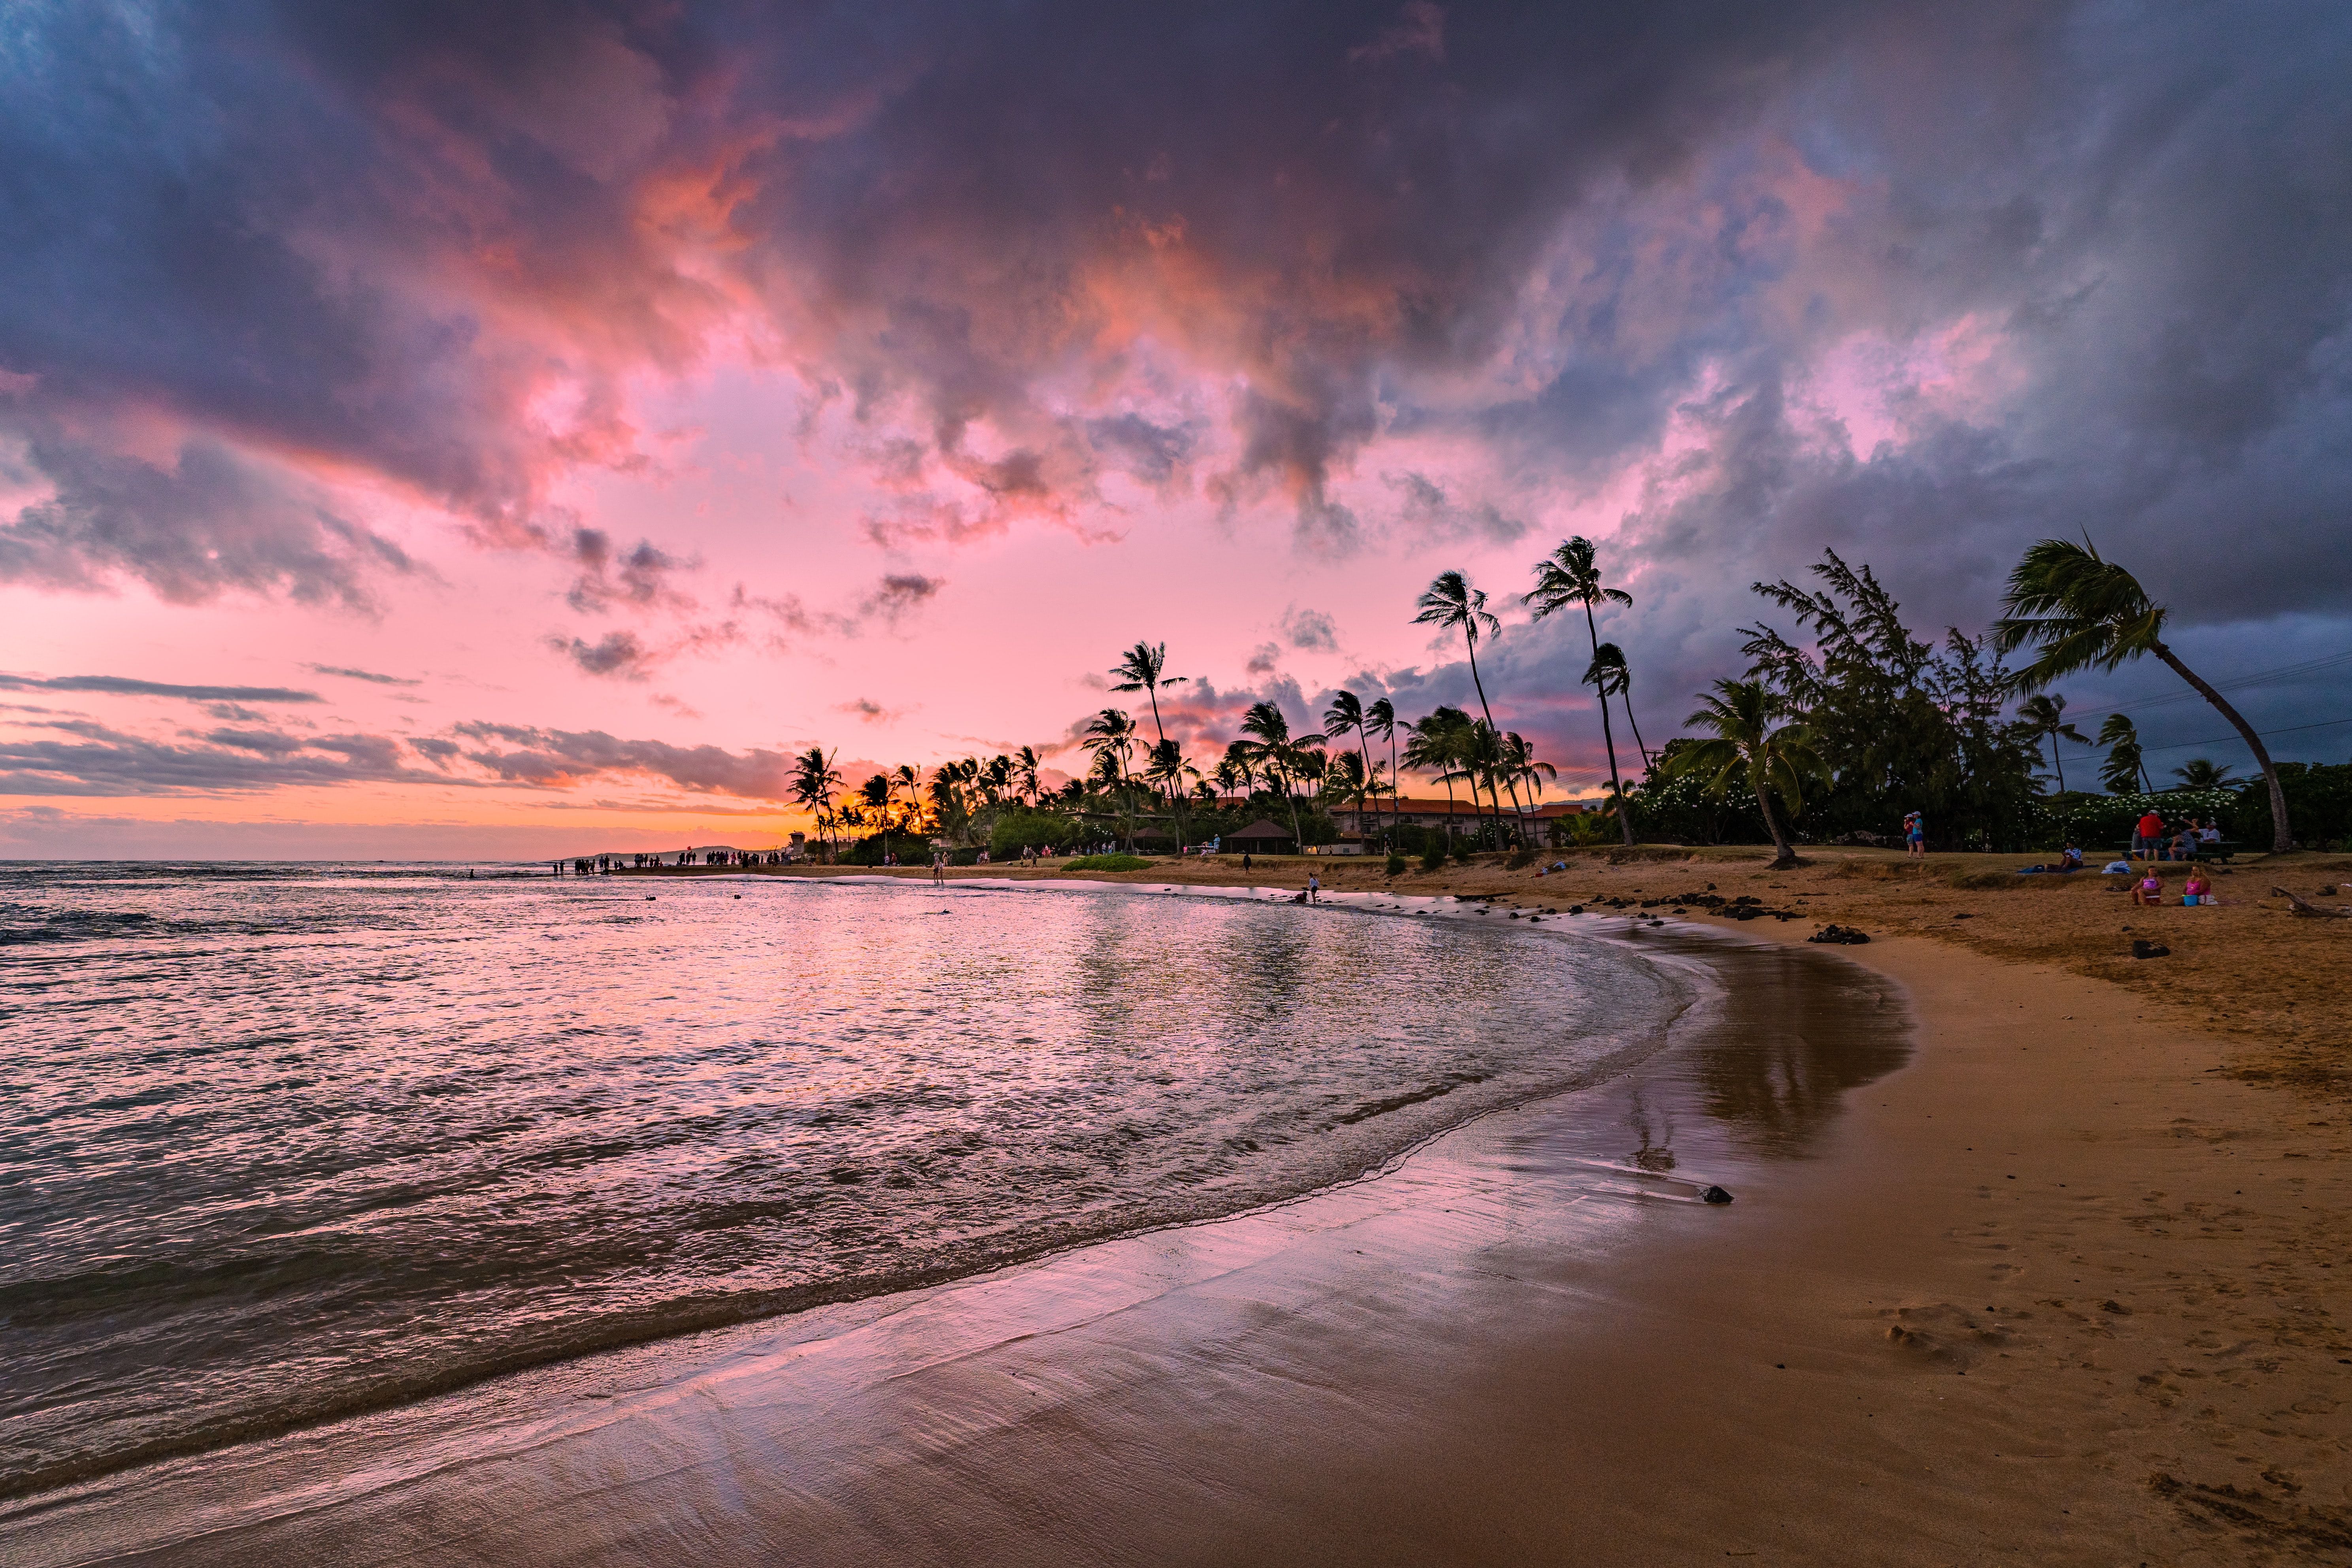 Sunset in Poipu, Kauai